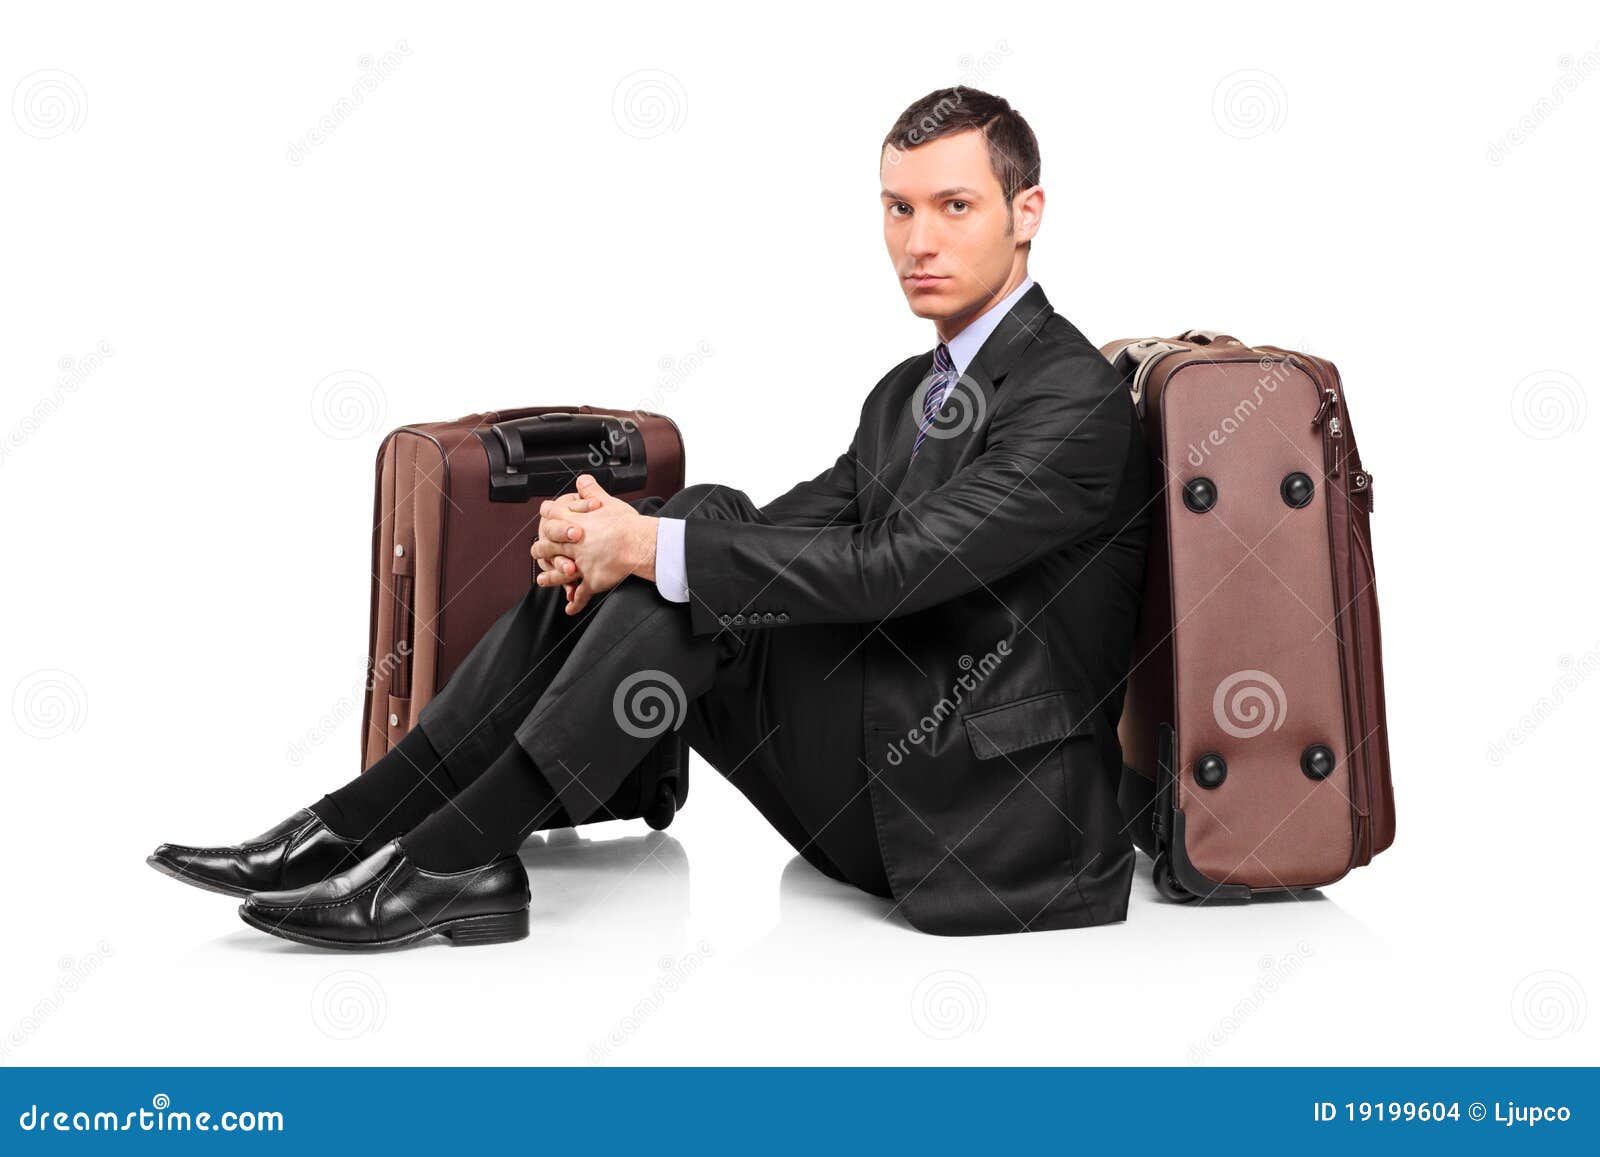 Муж выгоняет из дома что делать. Мужчина с чемоданом у дома. Чемодан телохранителя. Мужчина уходит из дома с чемоданом. Выгнали из дома.